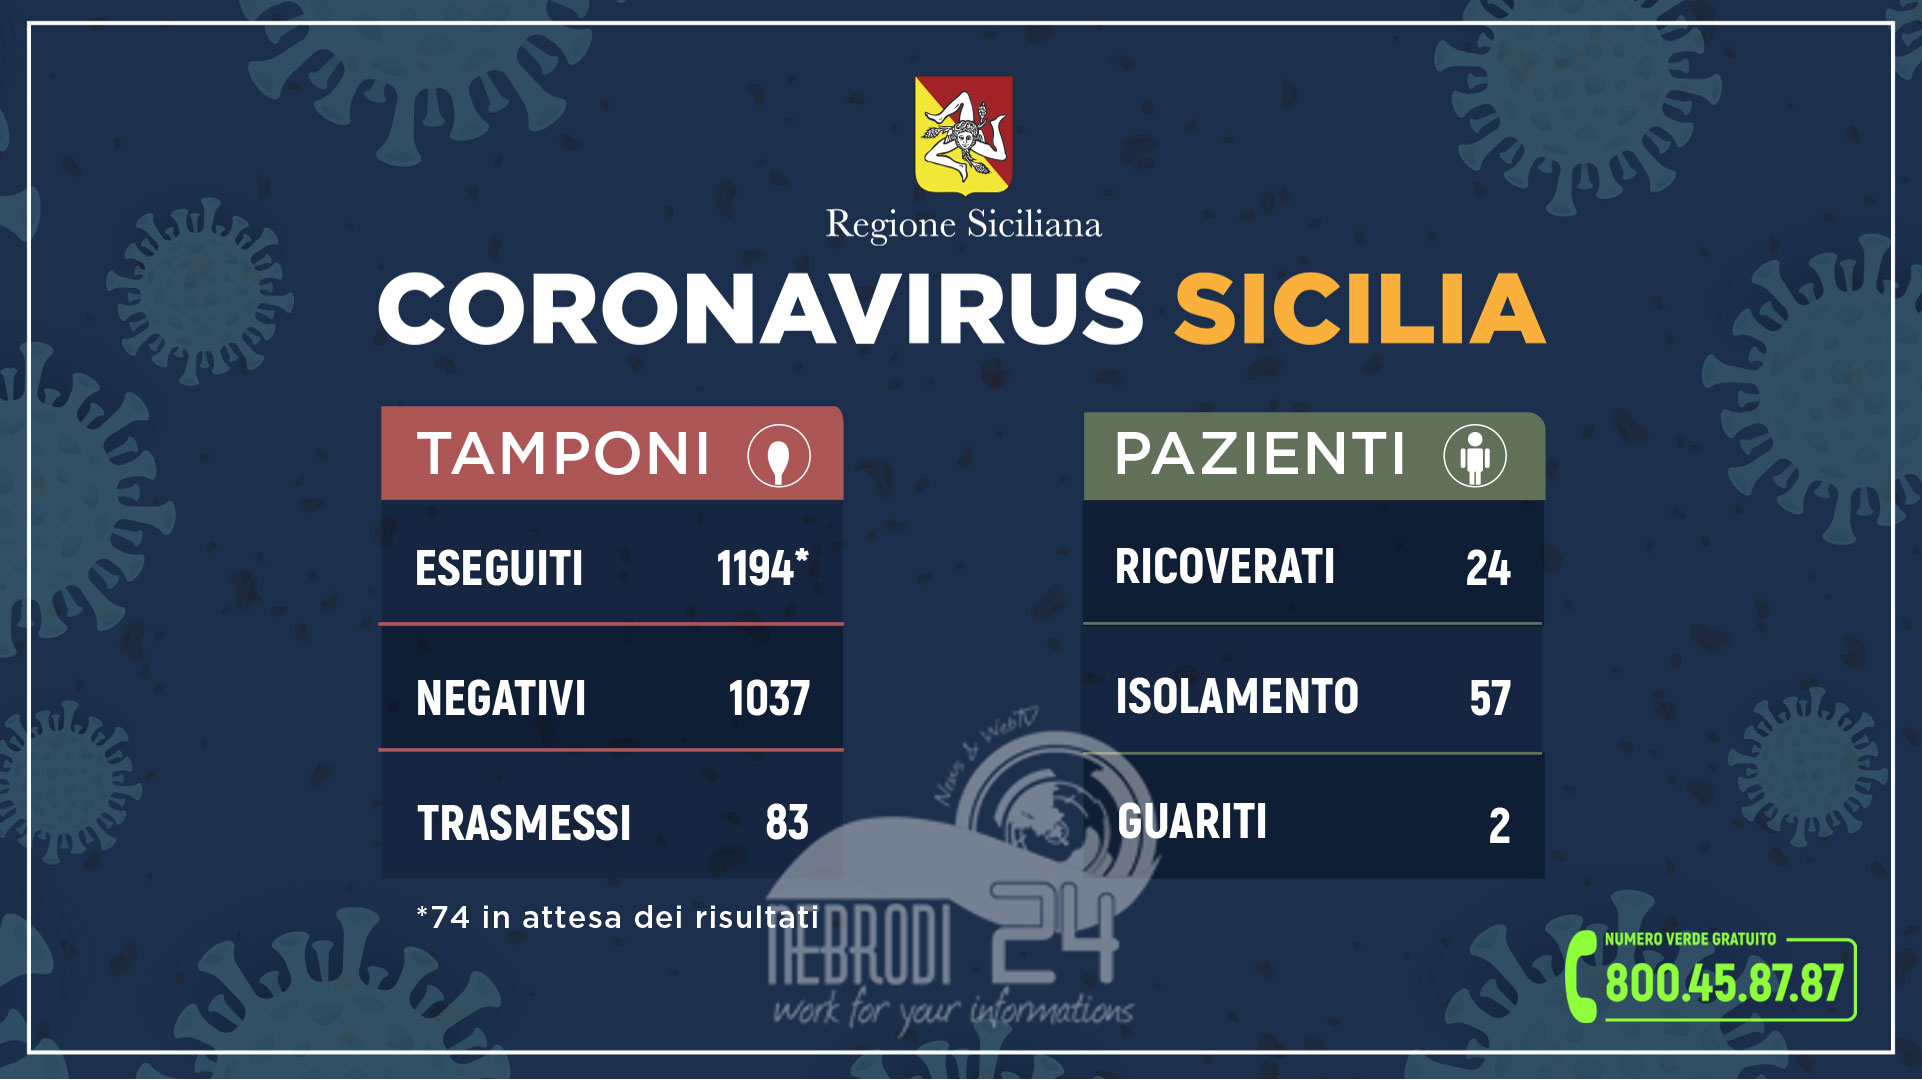 Sicilia – Coronavirus: l’aggiornamento in Sicilia. 83 i casi accertati fino adesso!